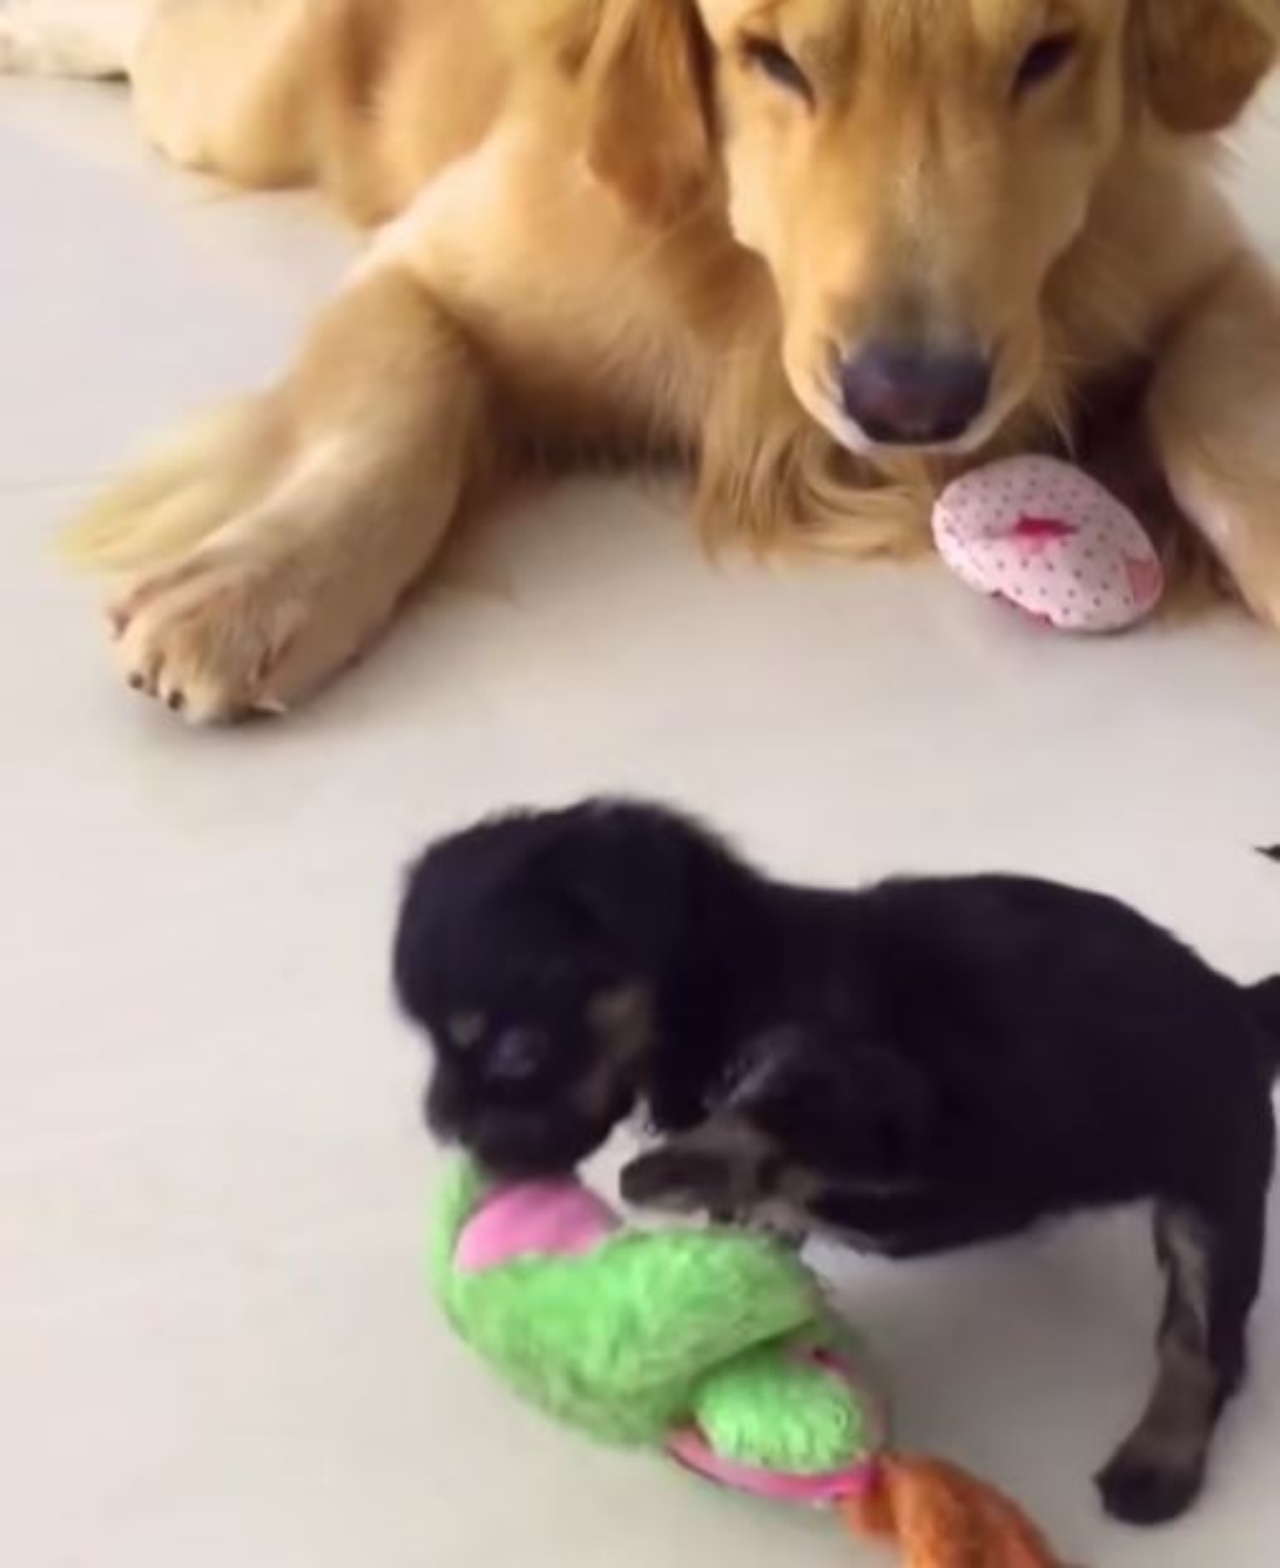 due cani che giocano insieme con dei peluches